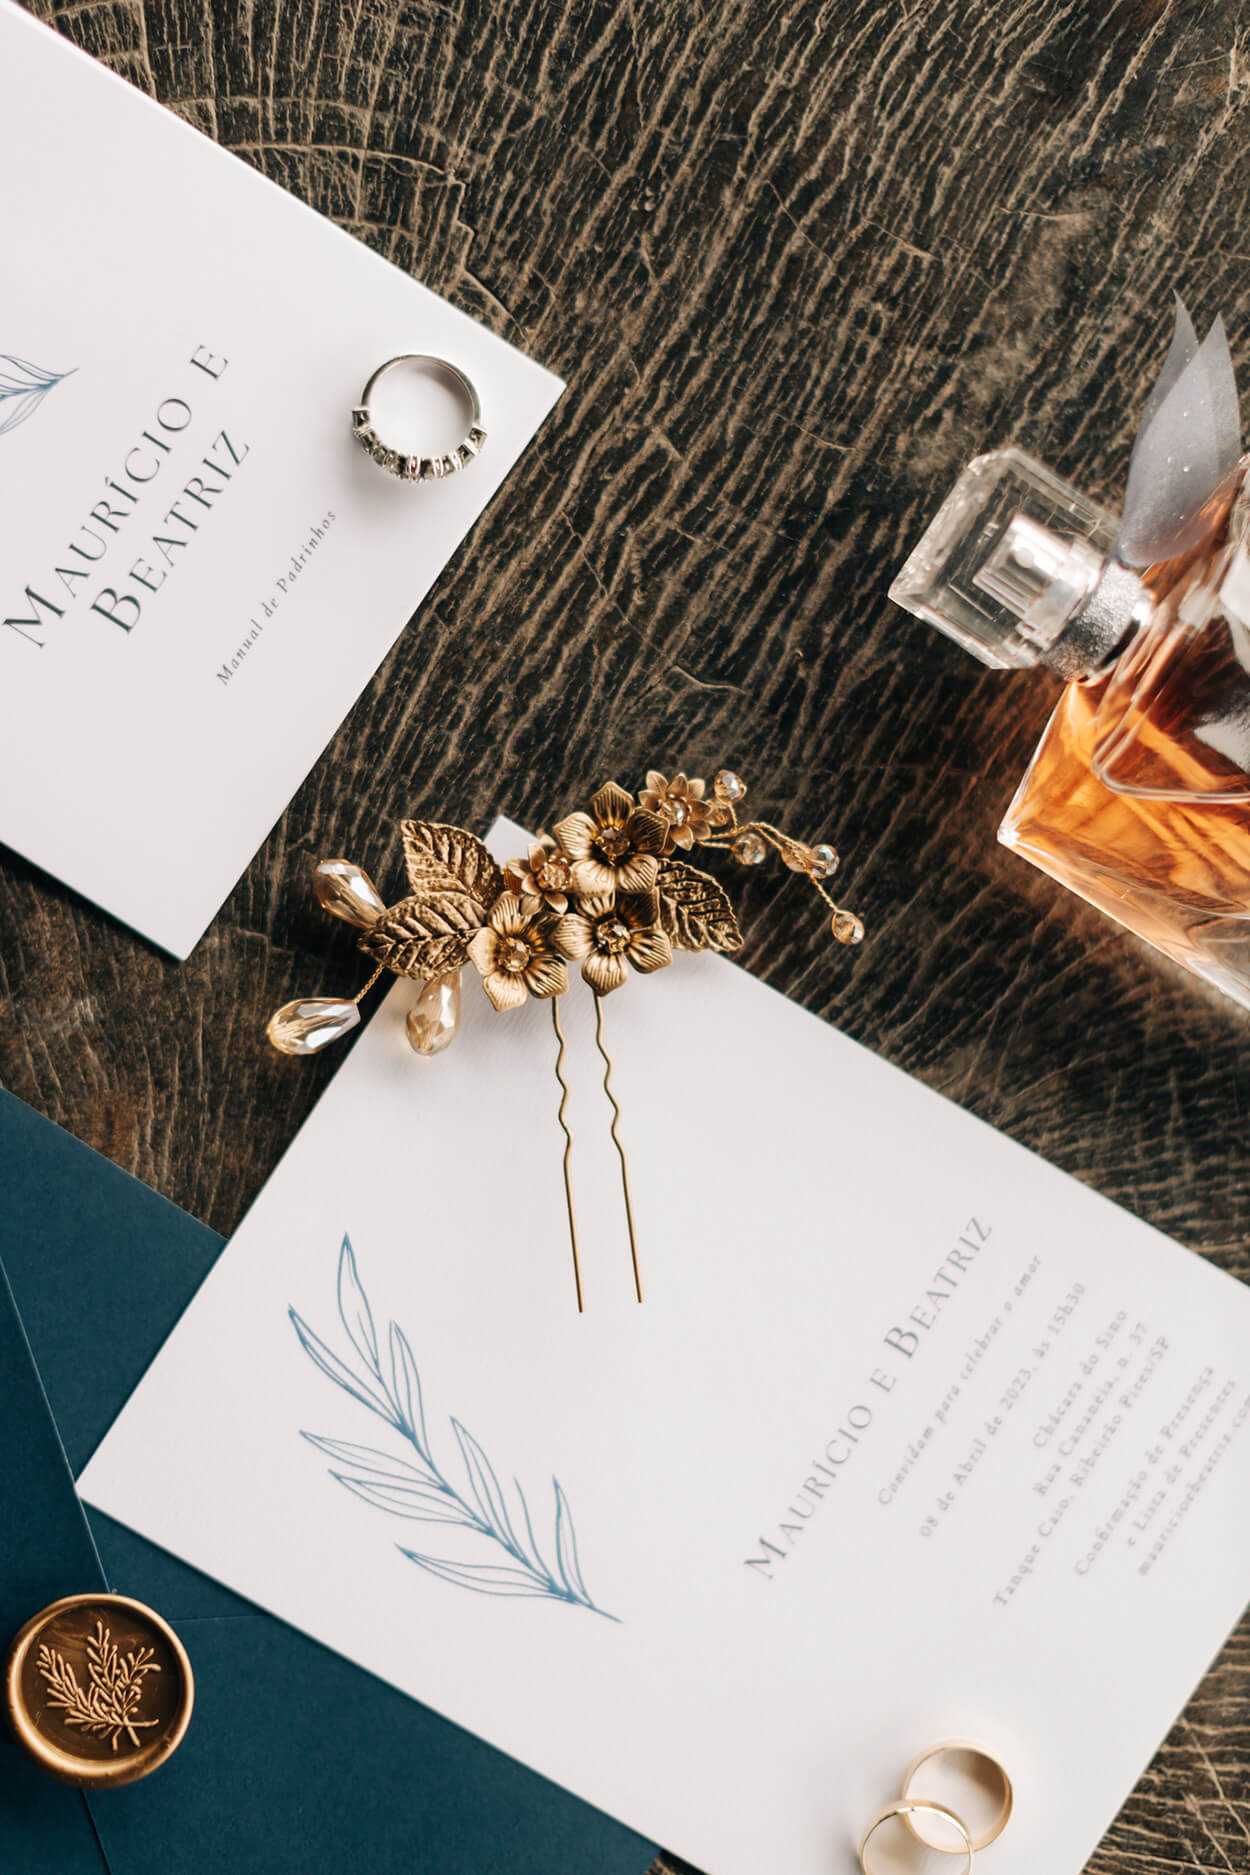 convite de casamento branco minimalista com envelope azul e lacre de cera dourado ao lado de perfume grinalda e brincos dourados